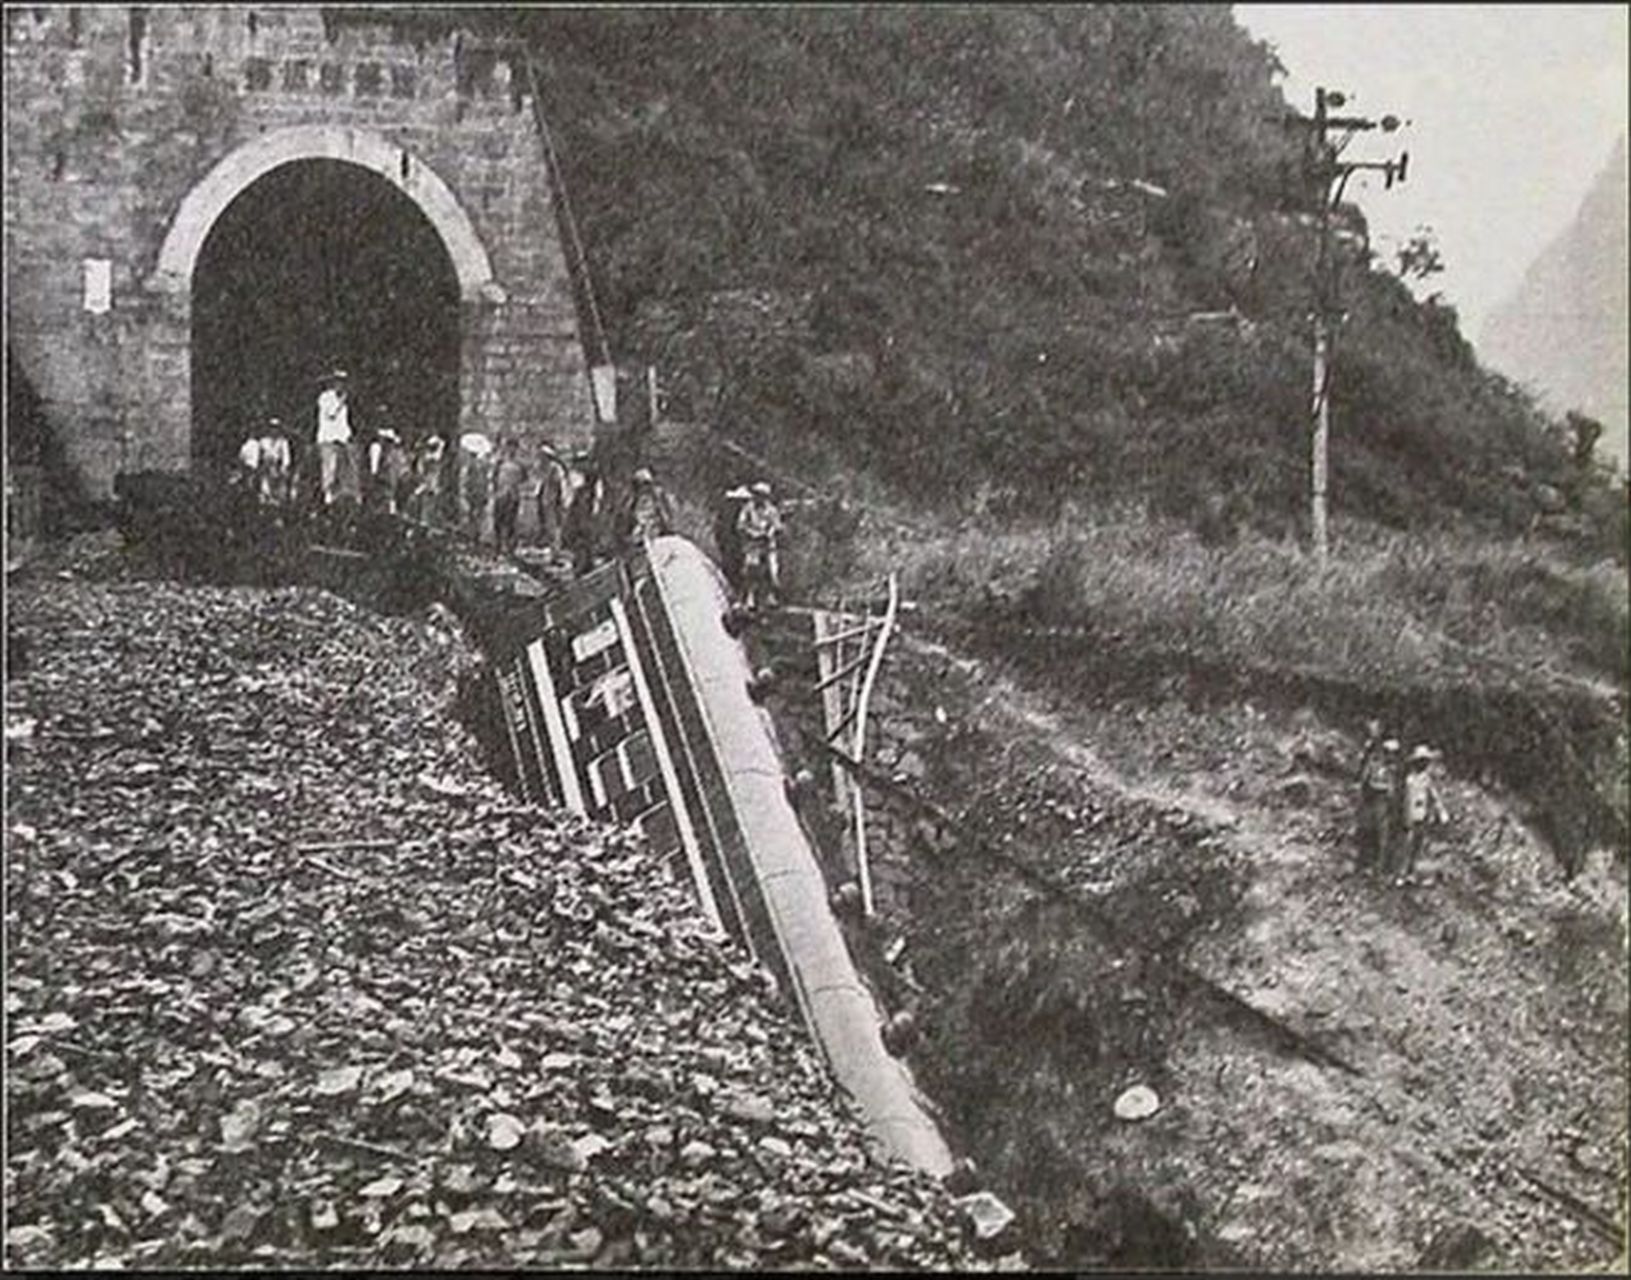 1981年,奶奶包隧道坠桥事故的现场照片,事故的起因是奶奶包隧道地区